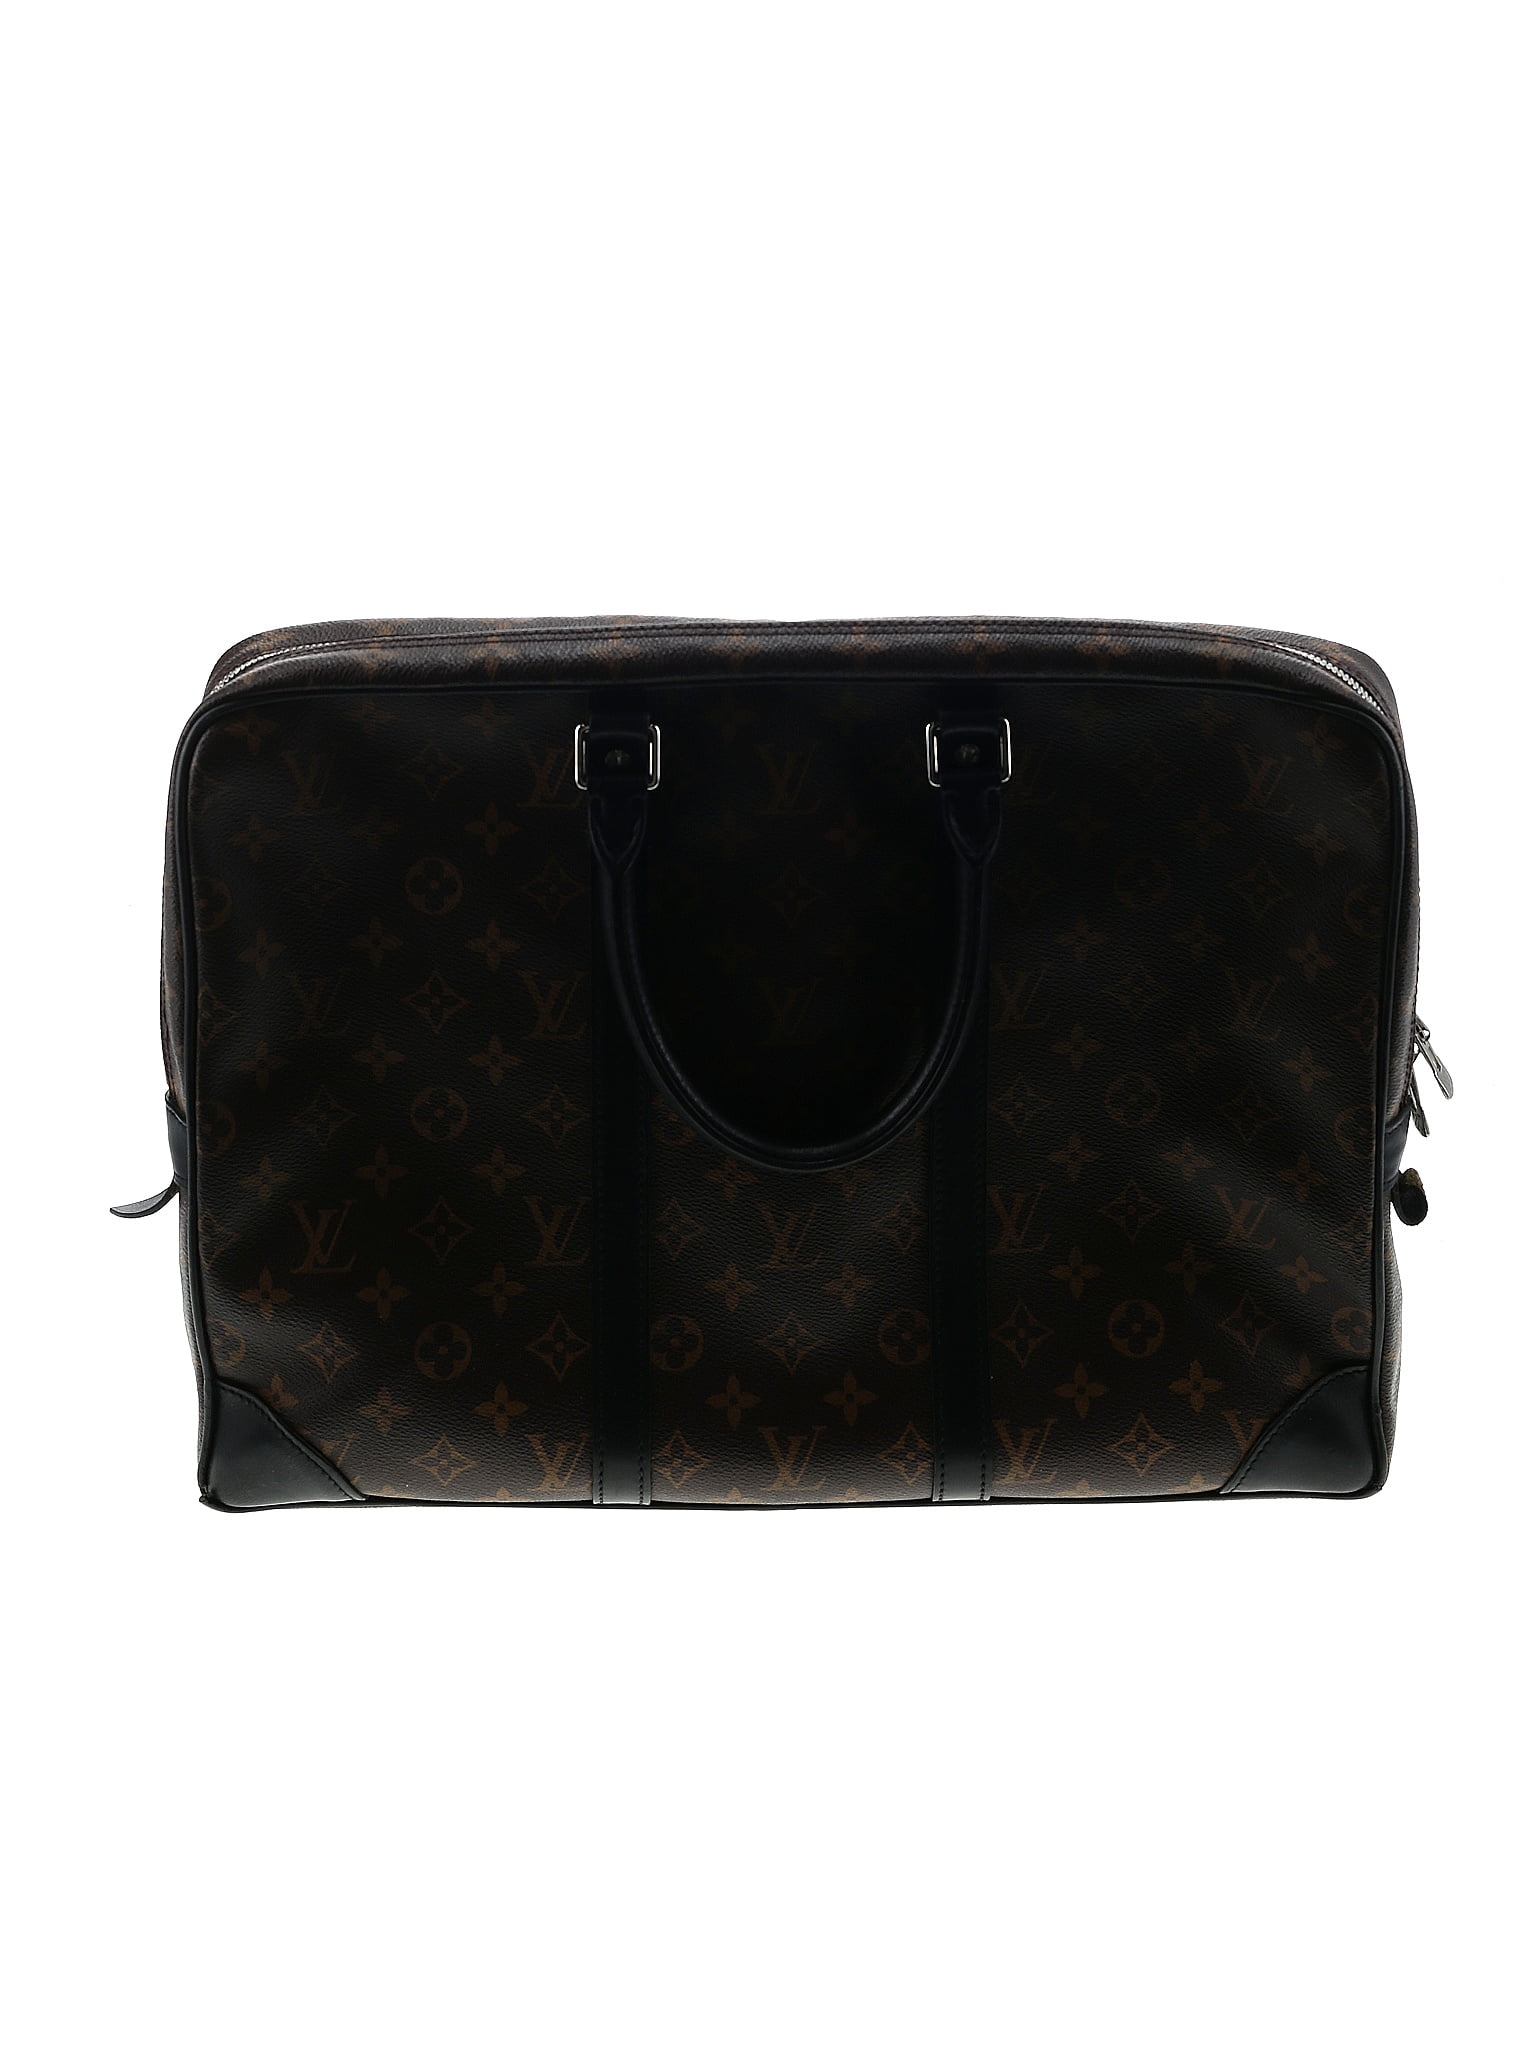 Louis Vuitton Monogram Laptop Handbag